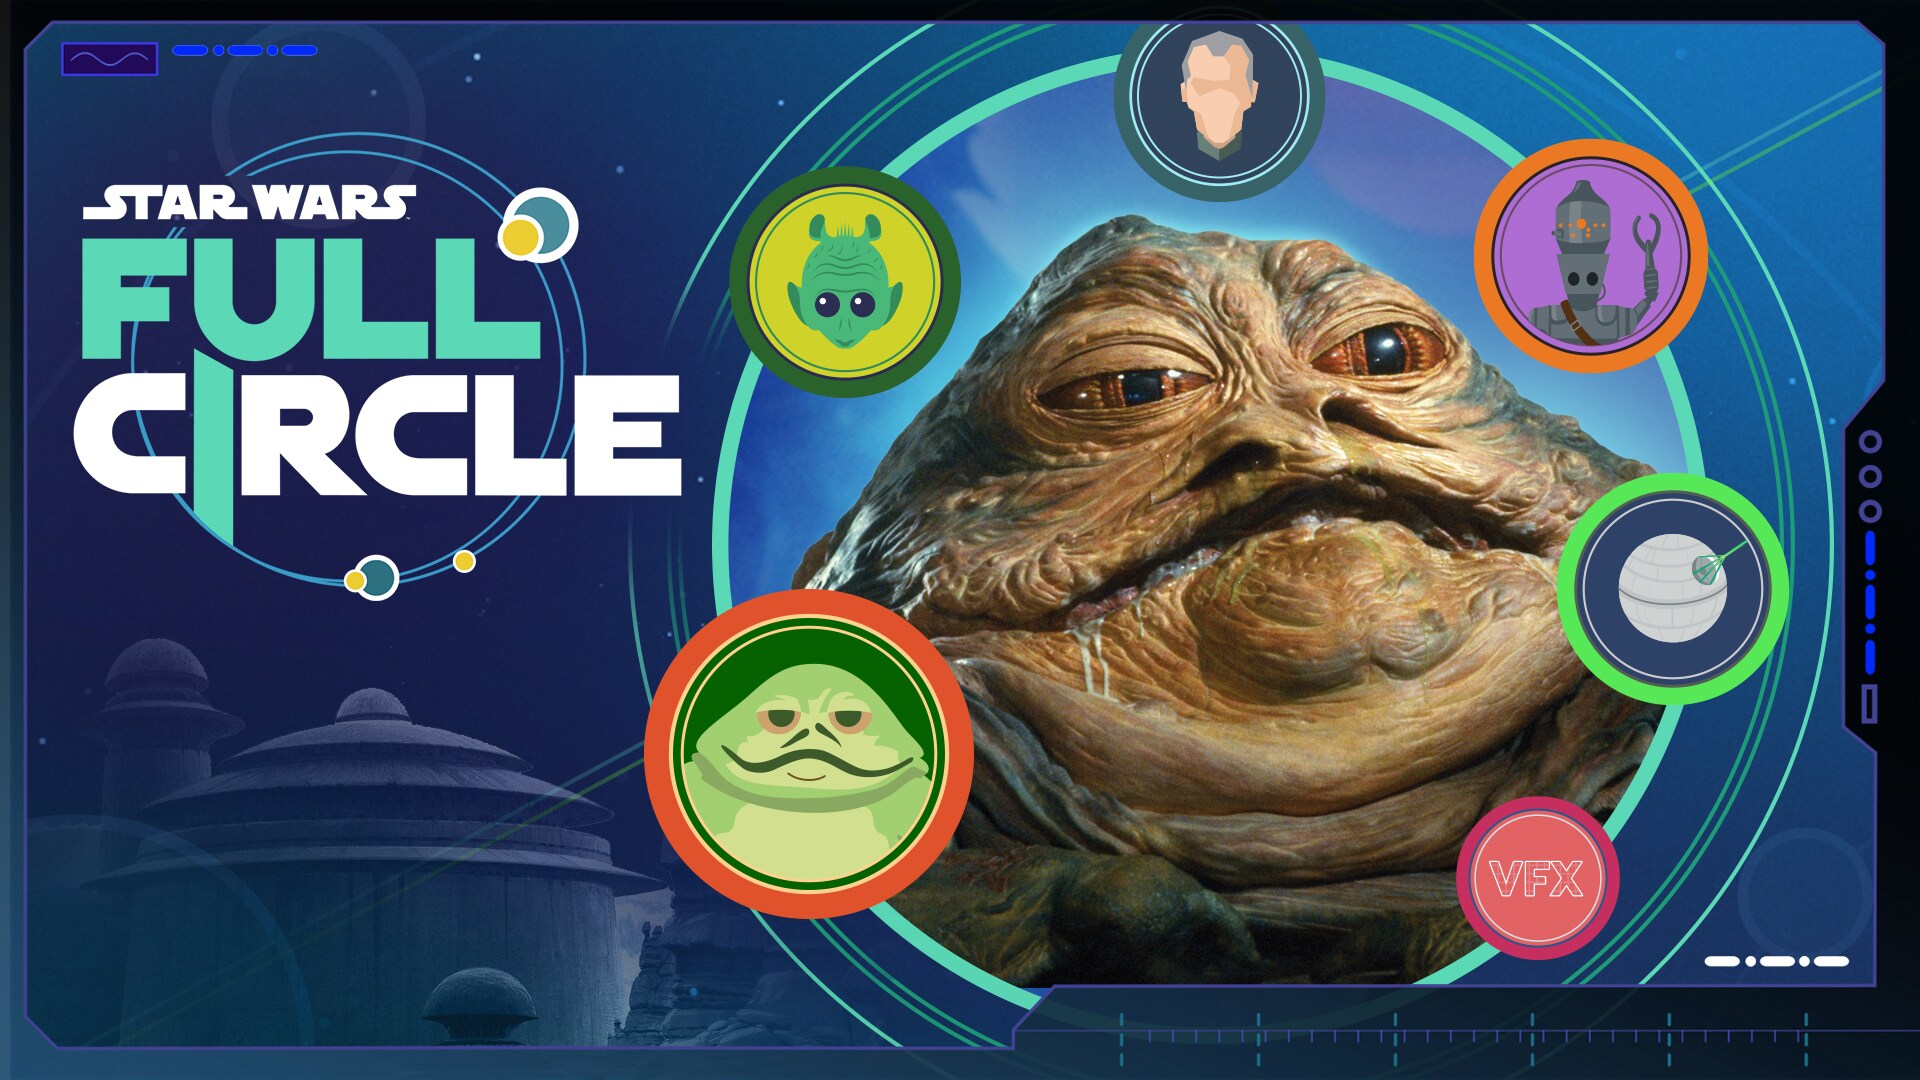 Jabba The Hutt | Star Wars Full Circle